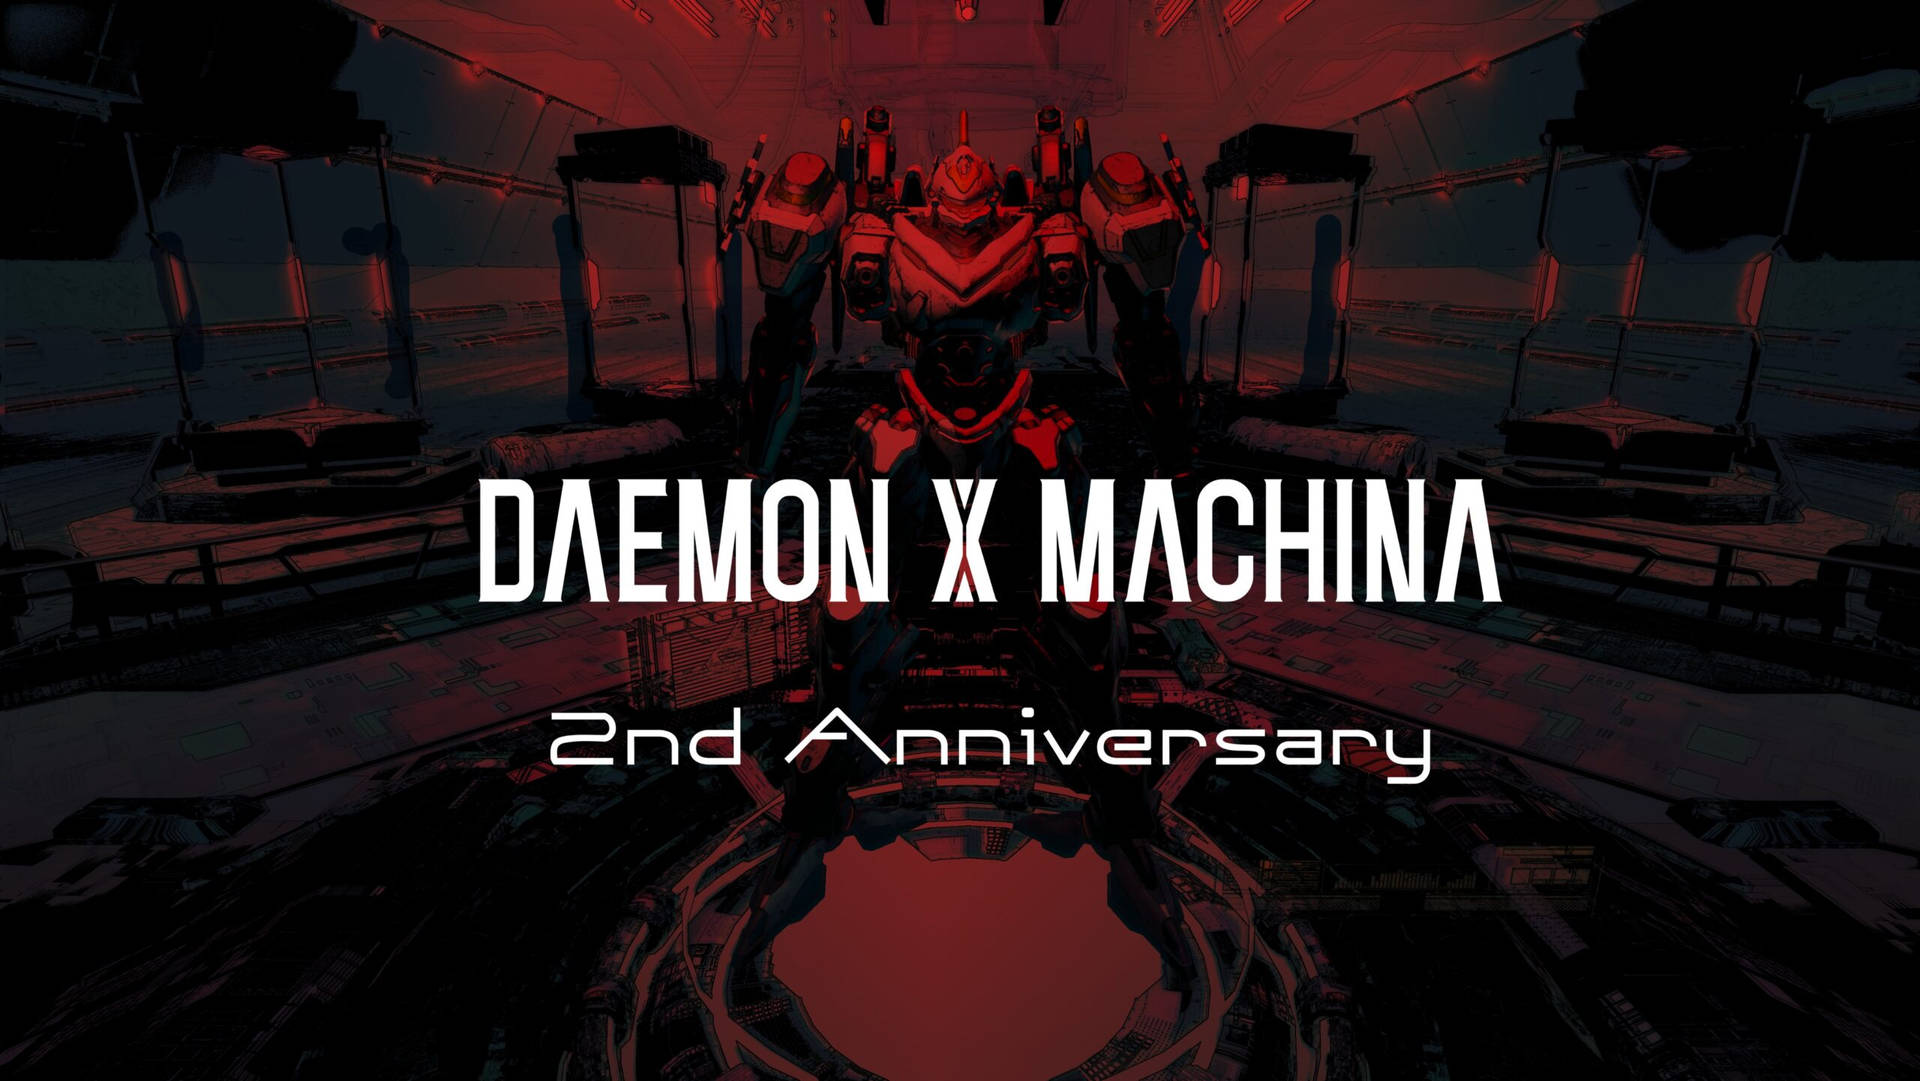 Daemon X Machina 2nd Anniversary Wallpaper